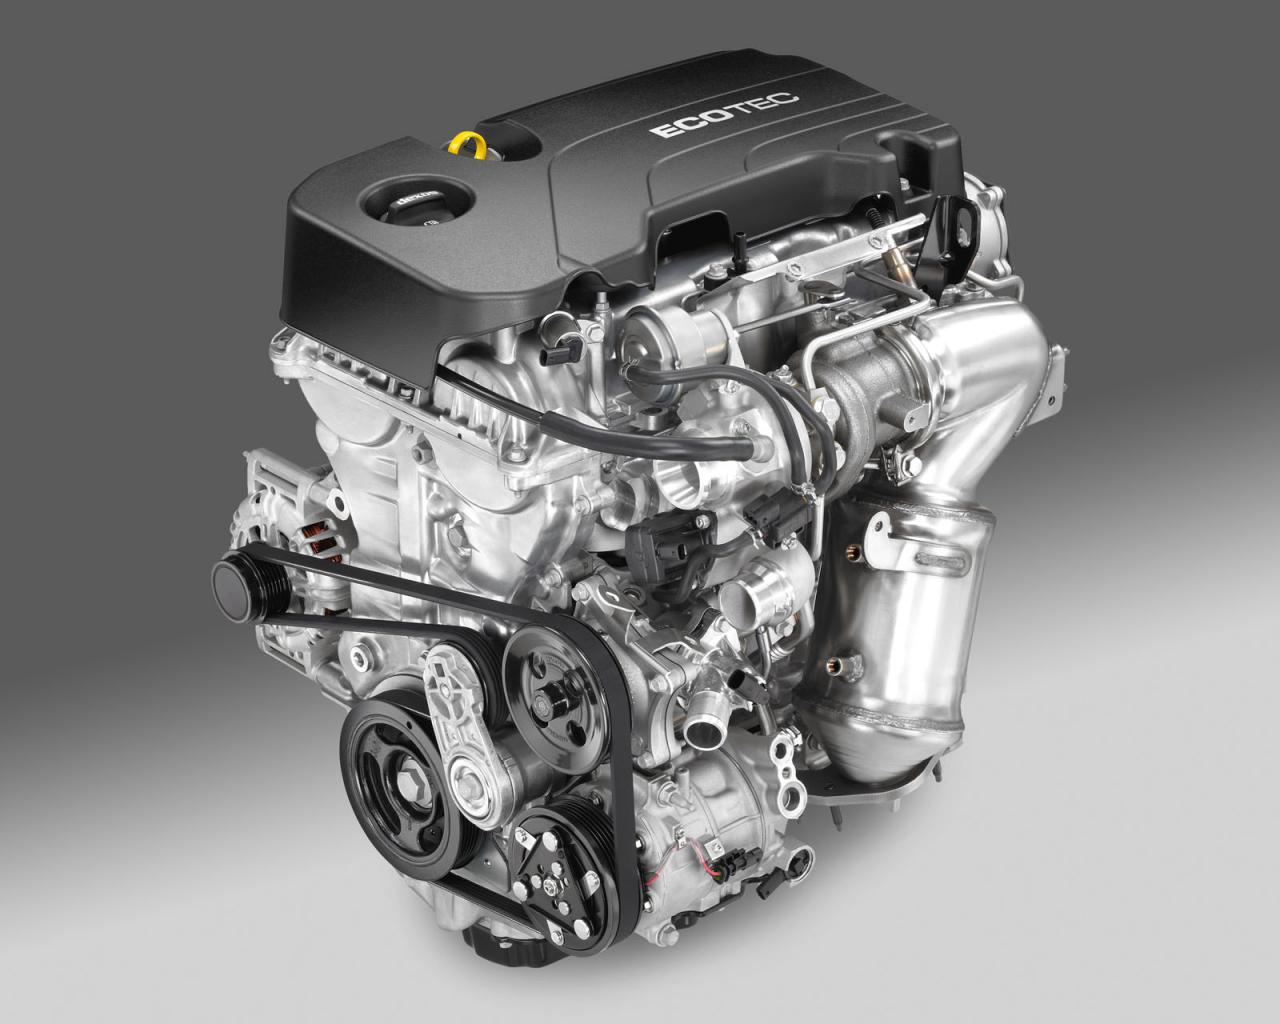 Η Opel συστήνει το νέο turbo βενζινοκινητήρα 1,4 λίτρων «με προορισμό» το Astra